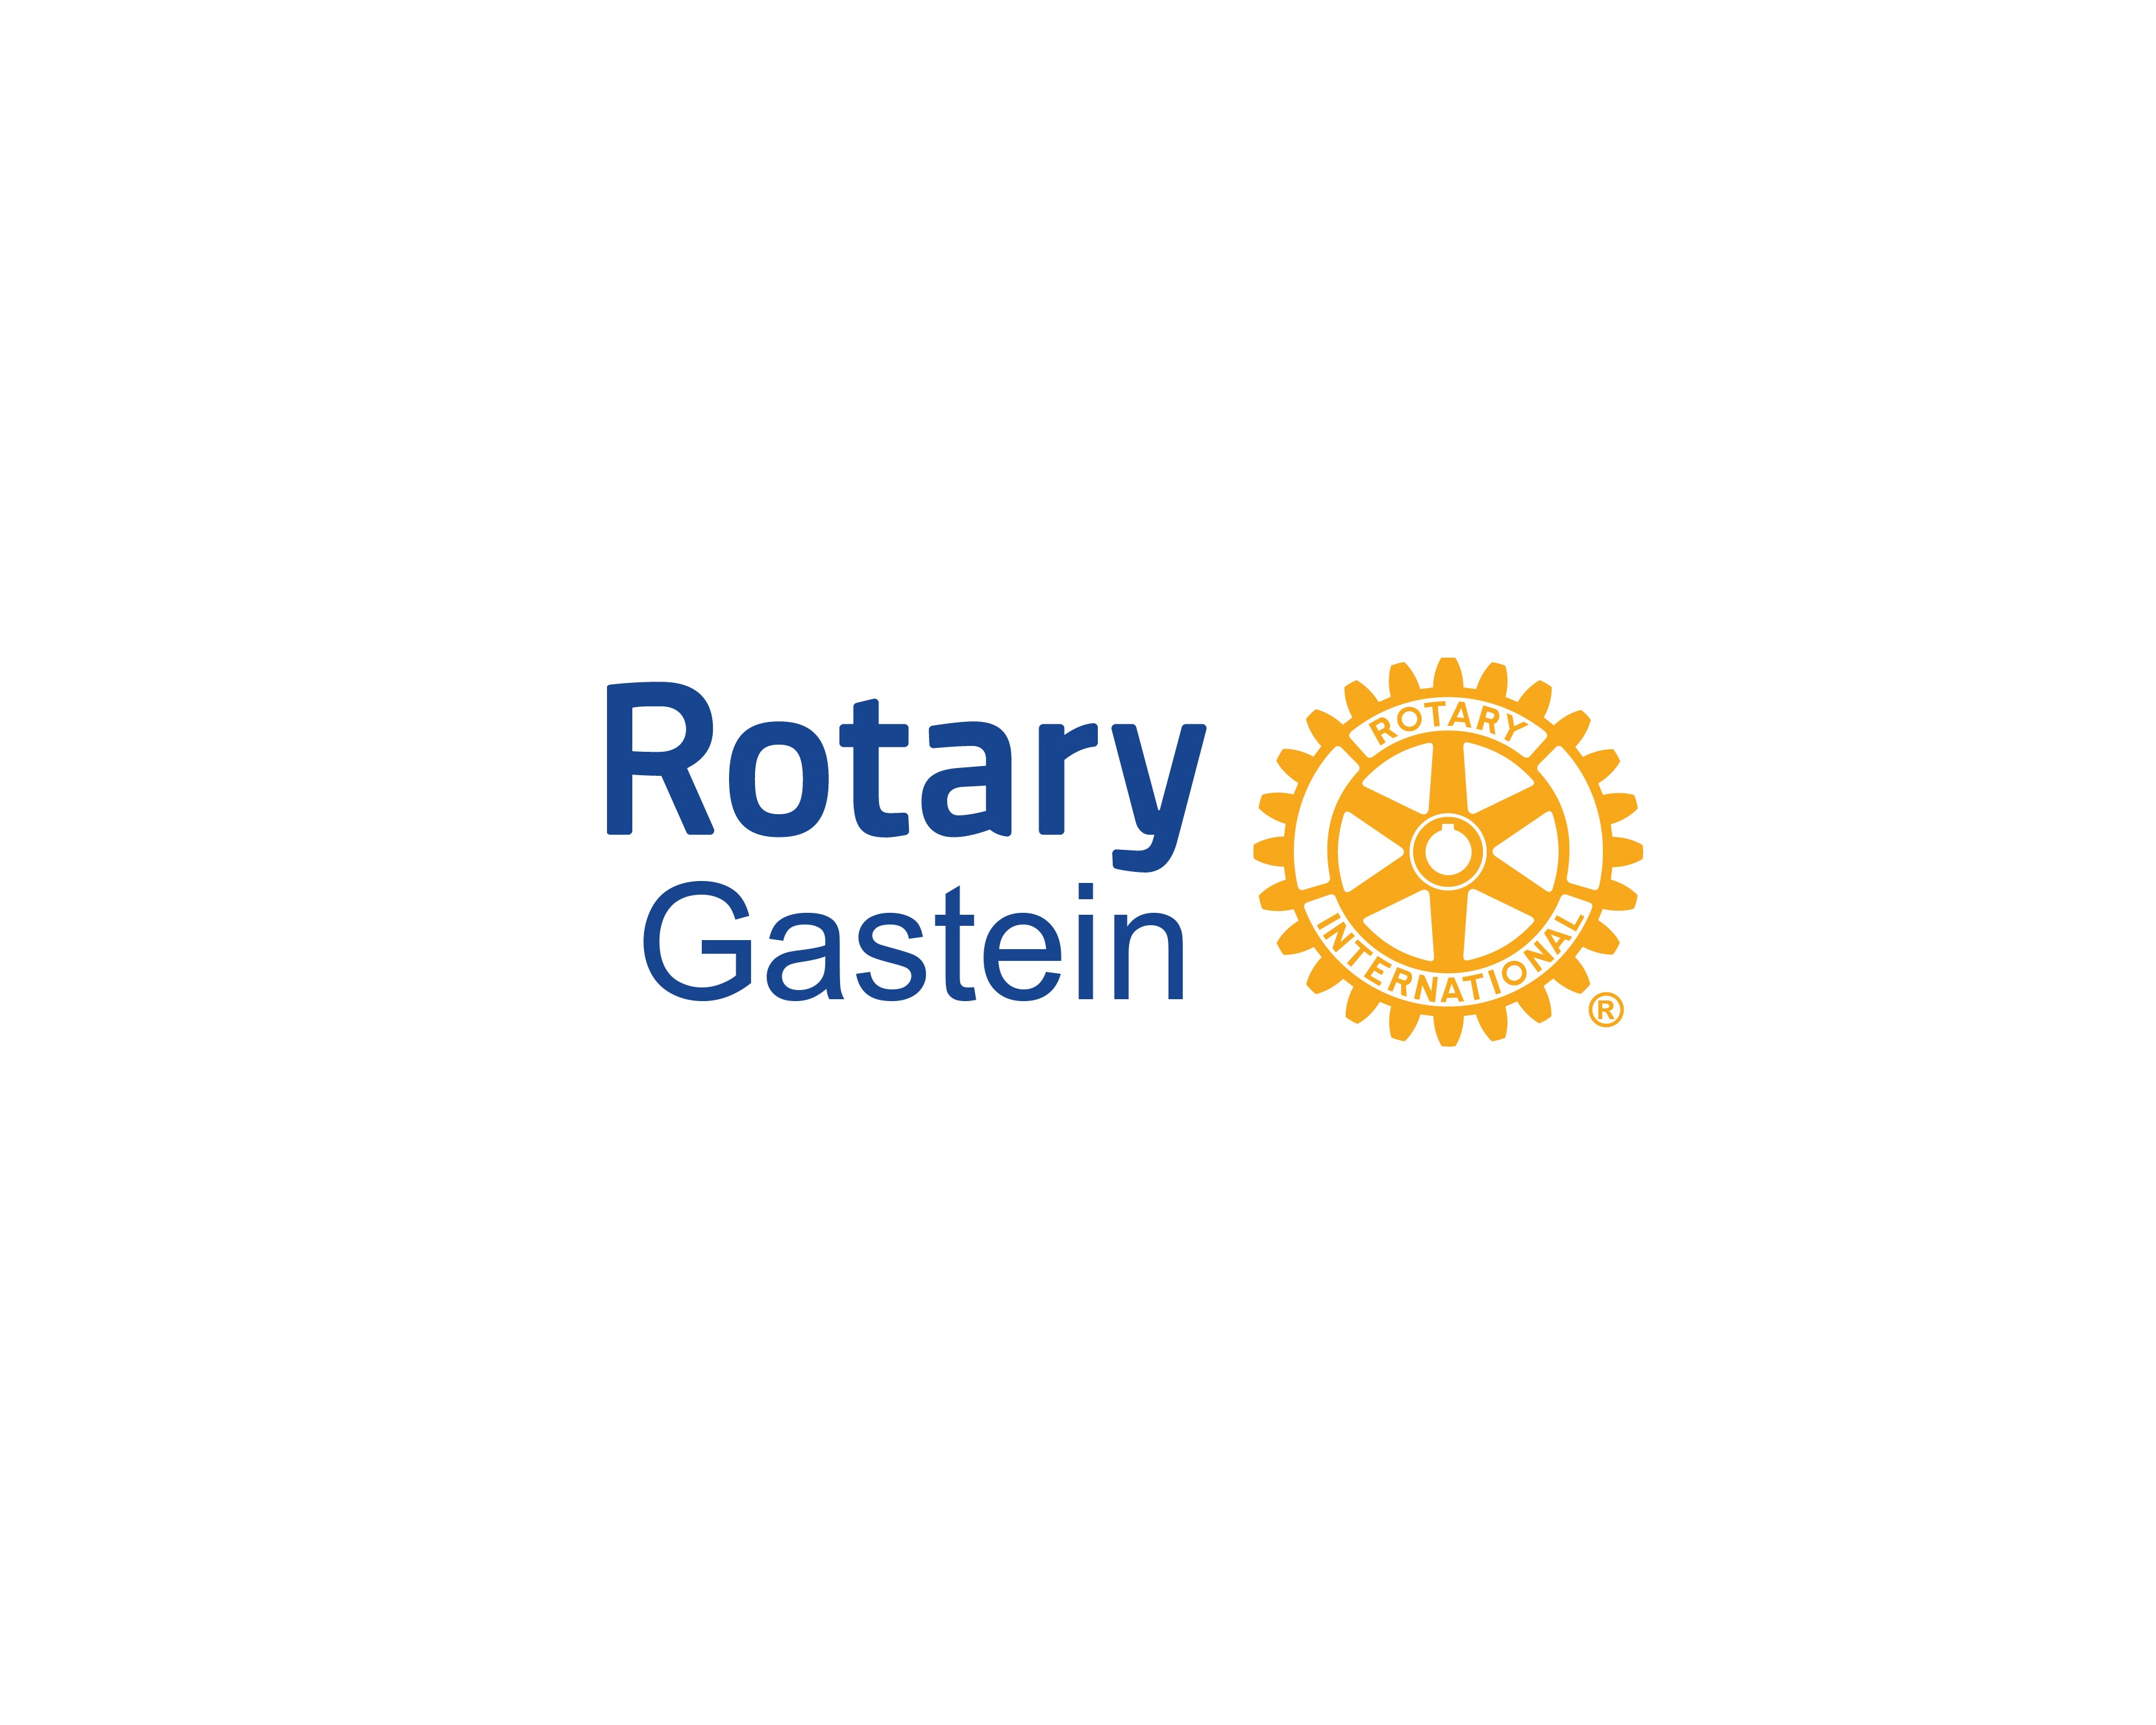 Rotary Gastein banner image